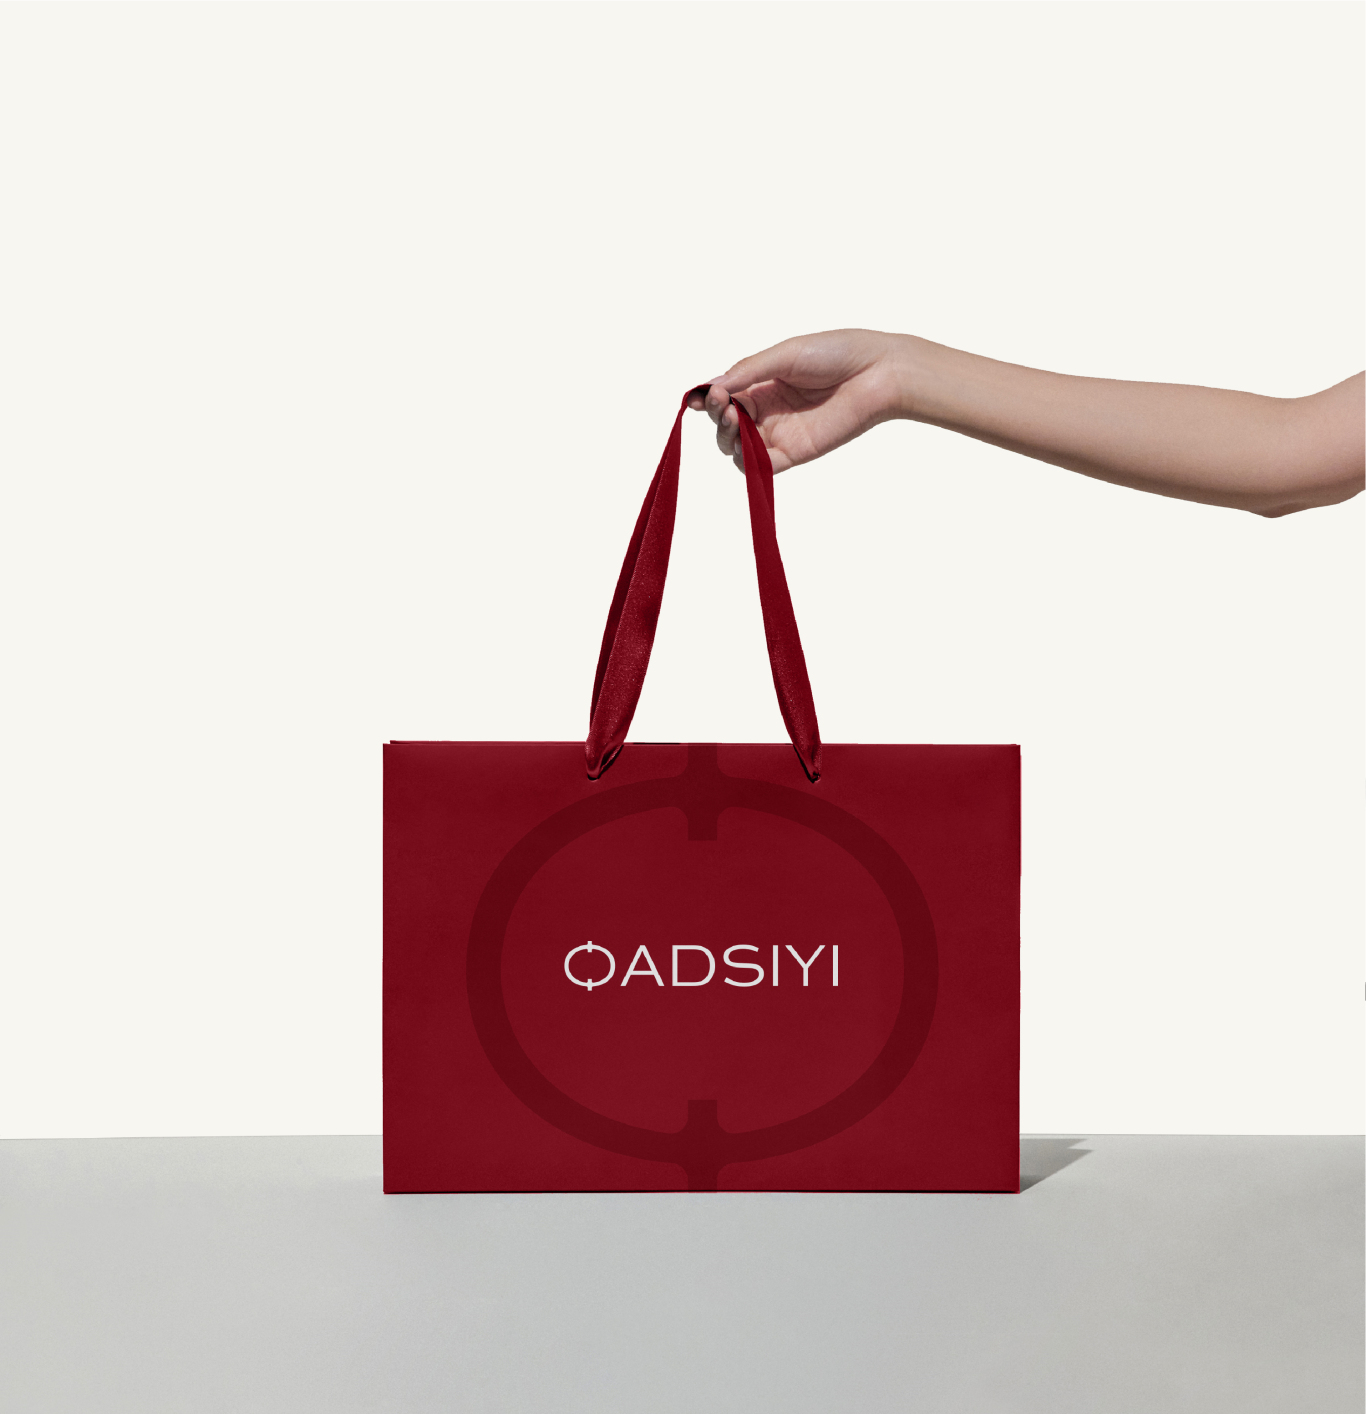 OADSIYI品牌形象+包装设计图19